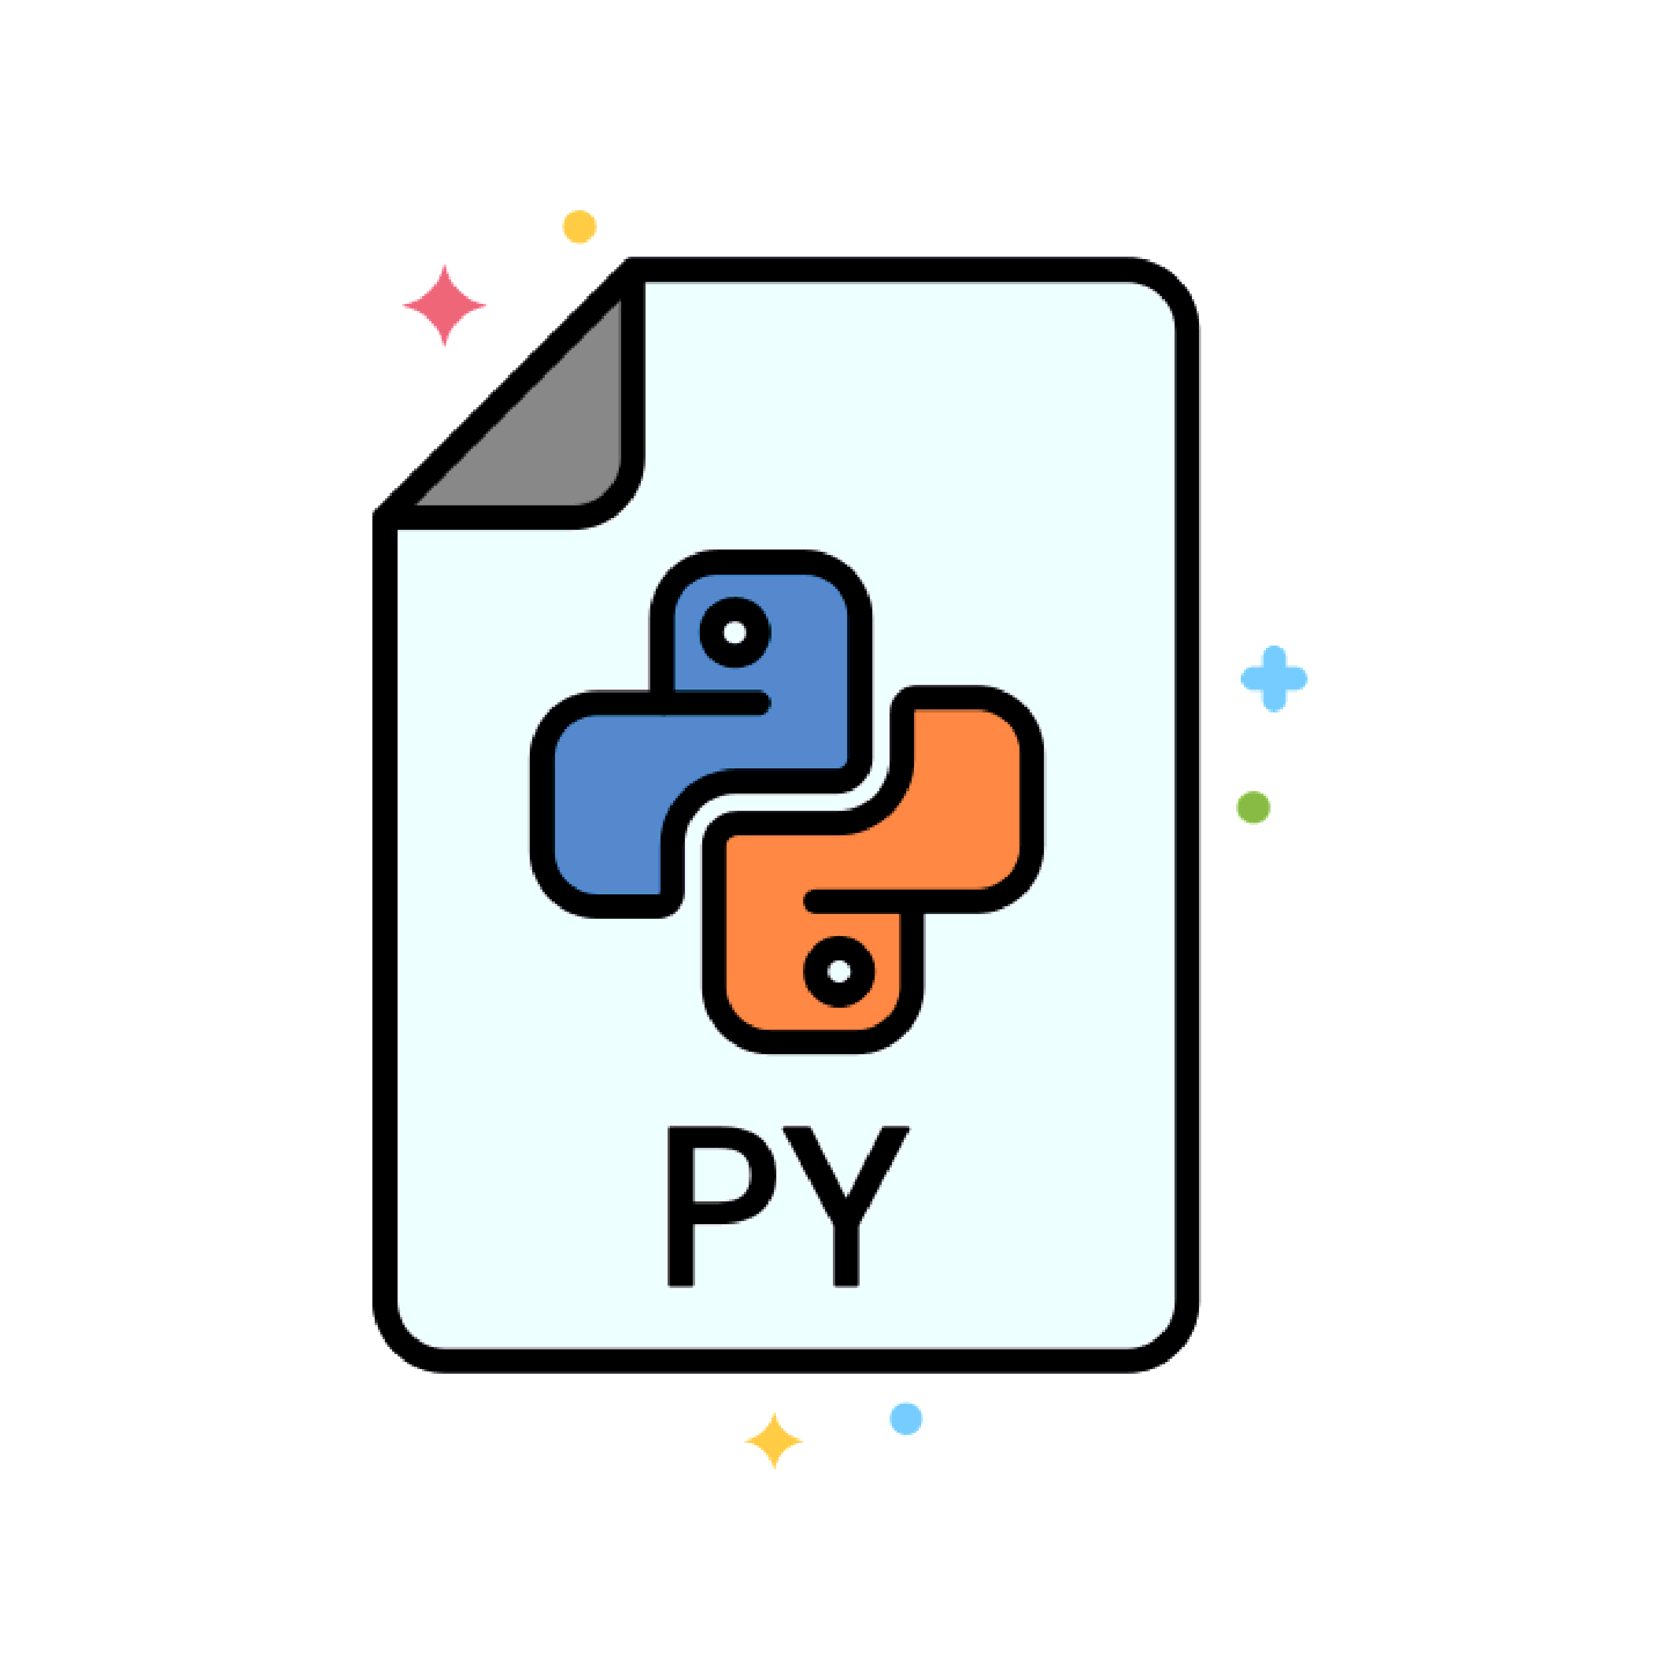 Calling c from python. Питон язык программирования. Значок Python. Питон язык программирования иконка. Программирование логотип.